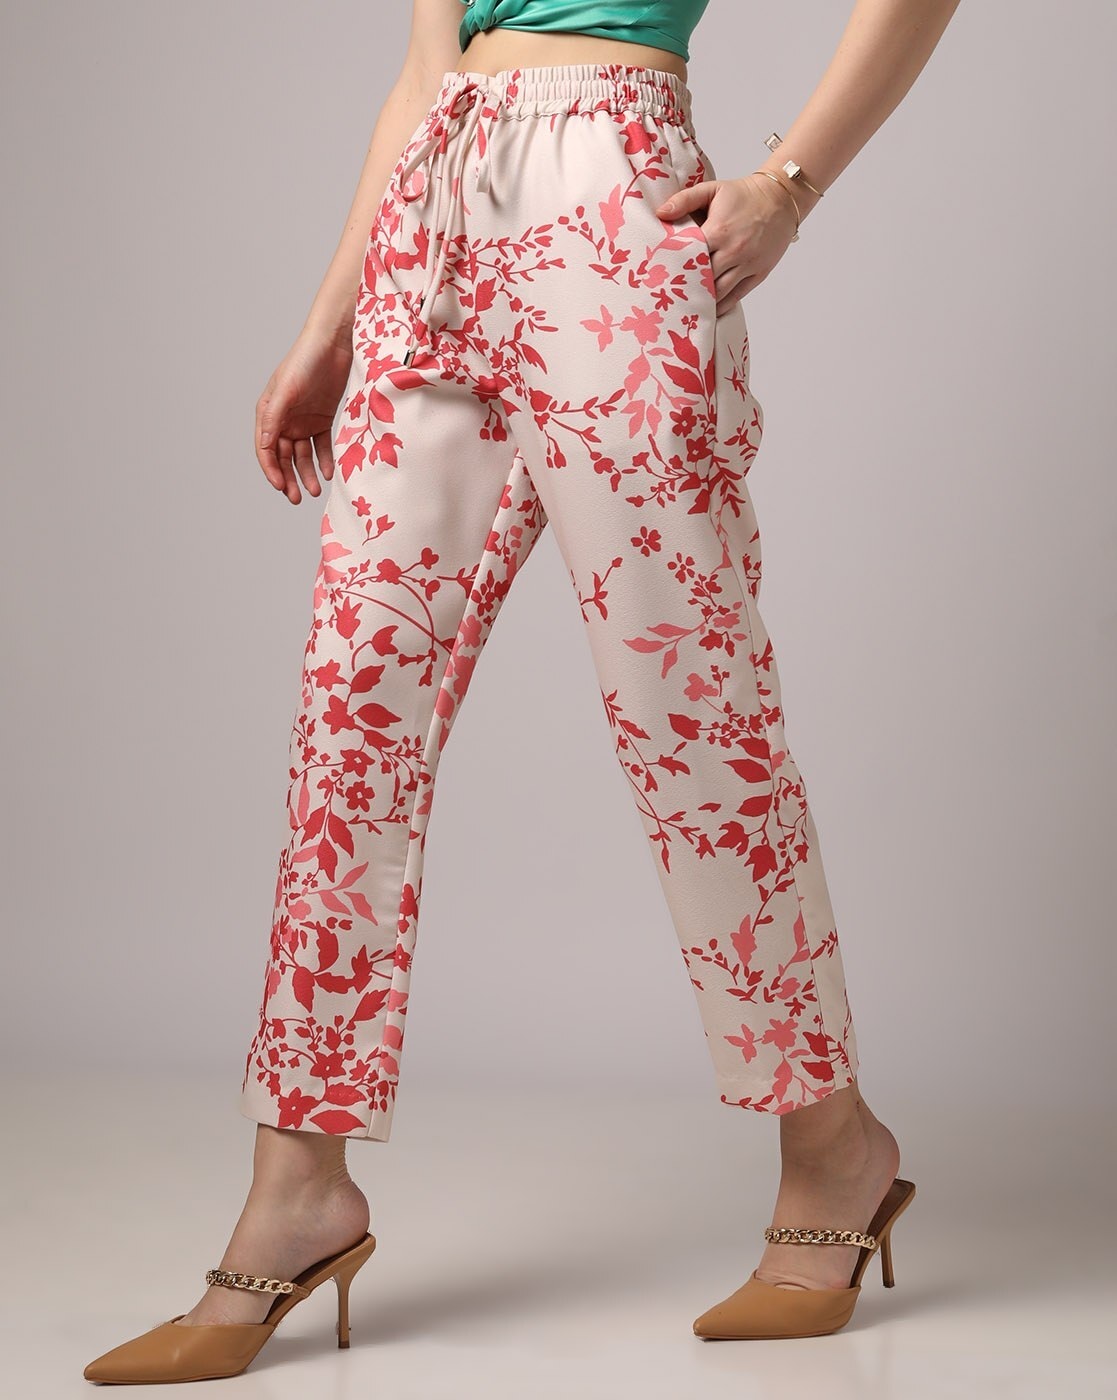 Flared Pants - Pink/floral - Ladies | H&M US